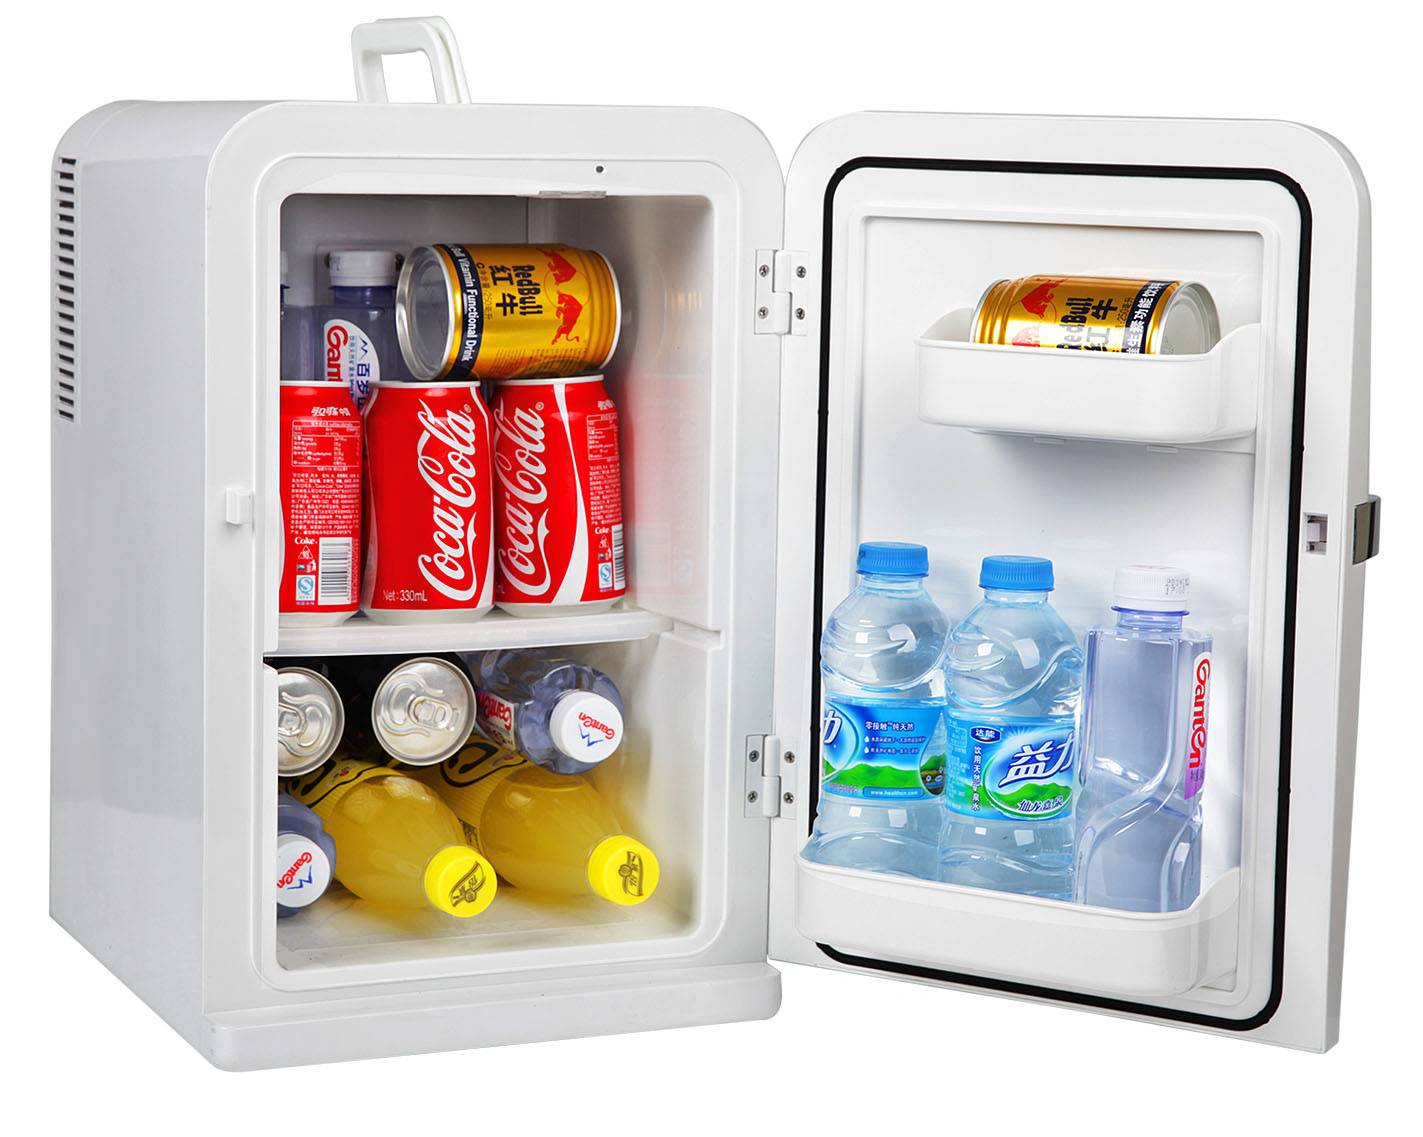 Мини-холодильник рейтинг какой лучше выбрать  обзор лучших производителей